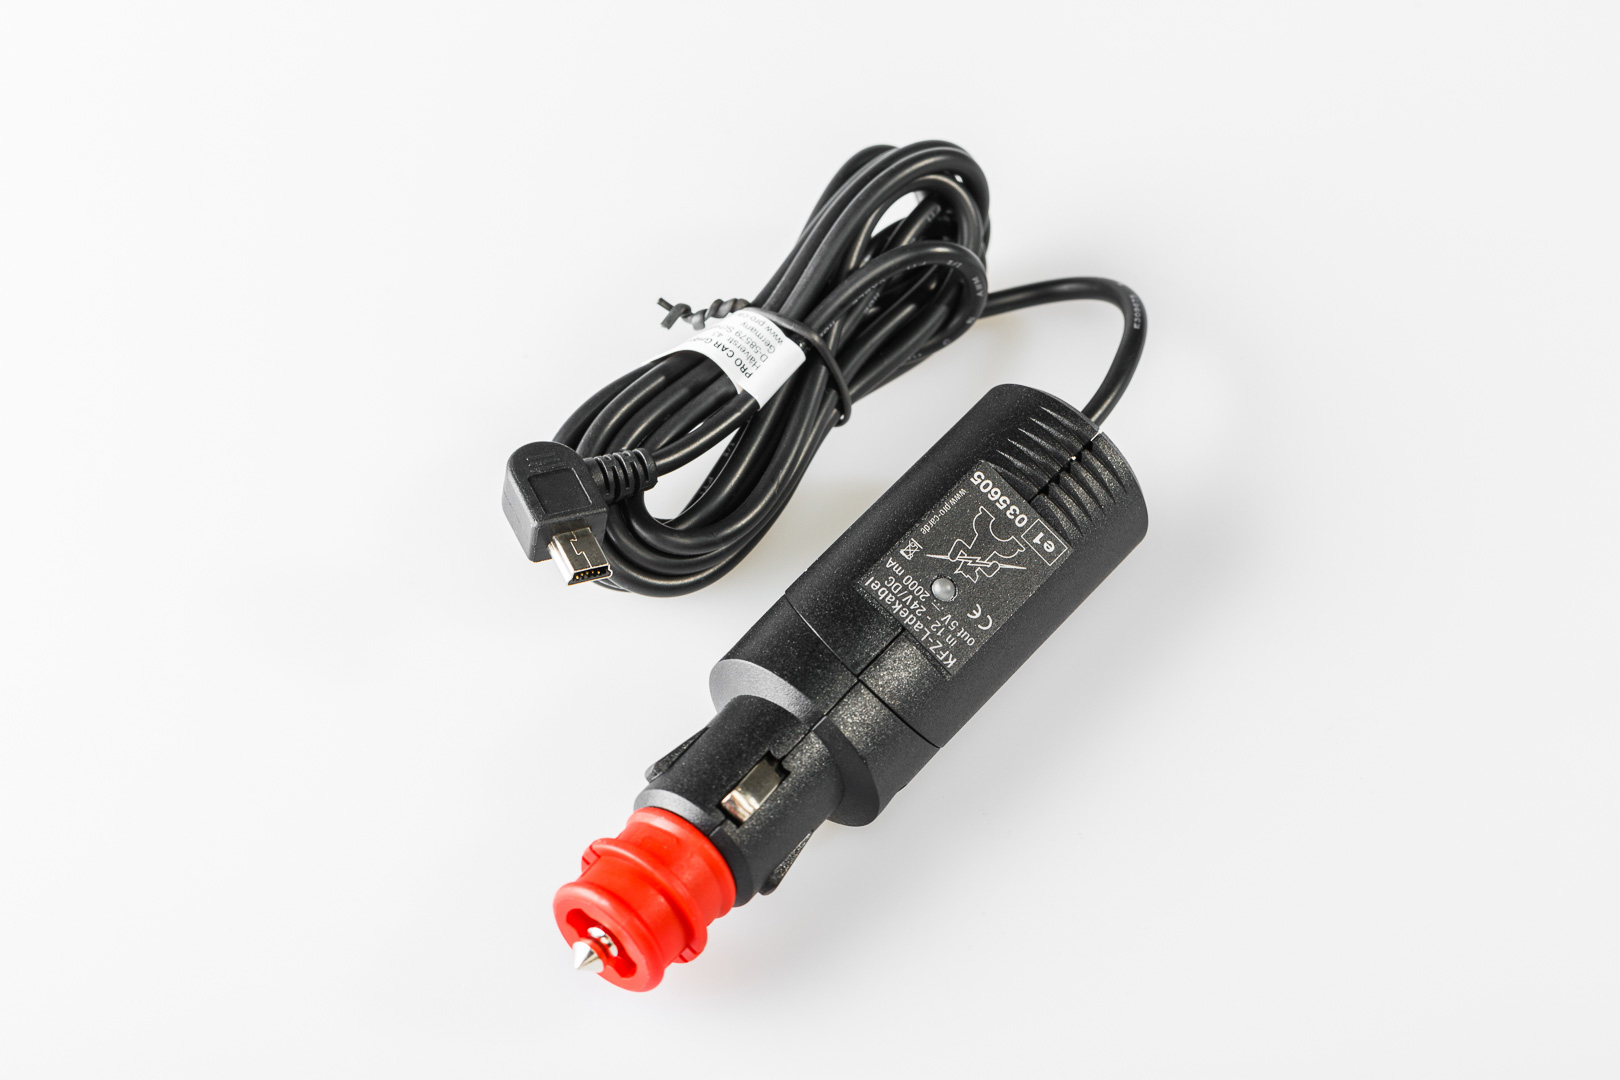 SW-Motech Chargeur Mini USB - Pour prise 12 V DIN et allume-cigare.... Noir unique taille